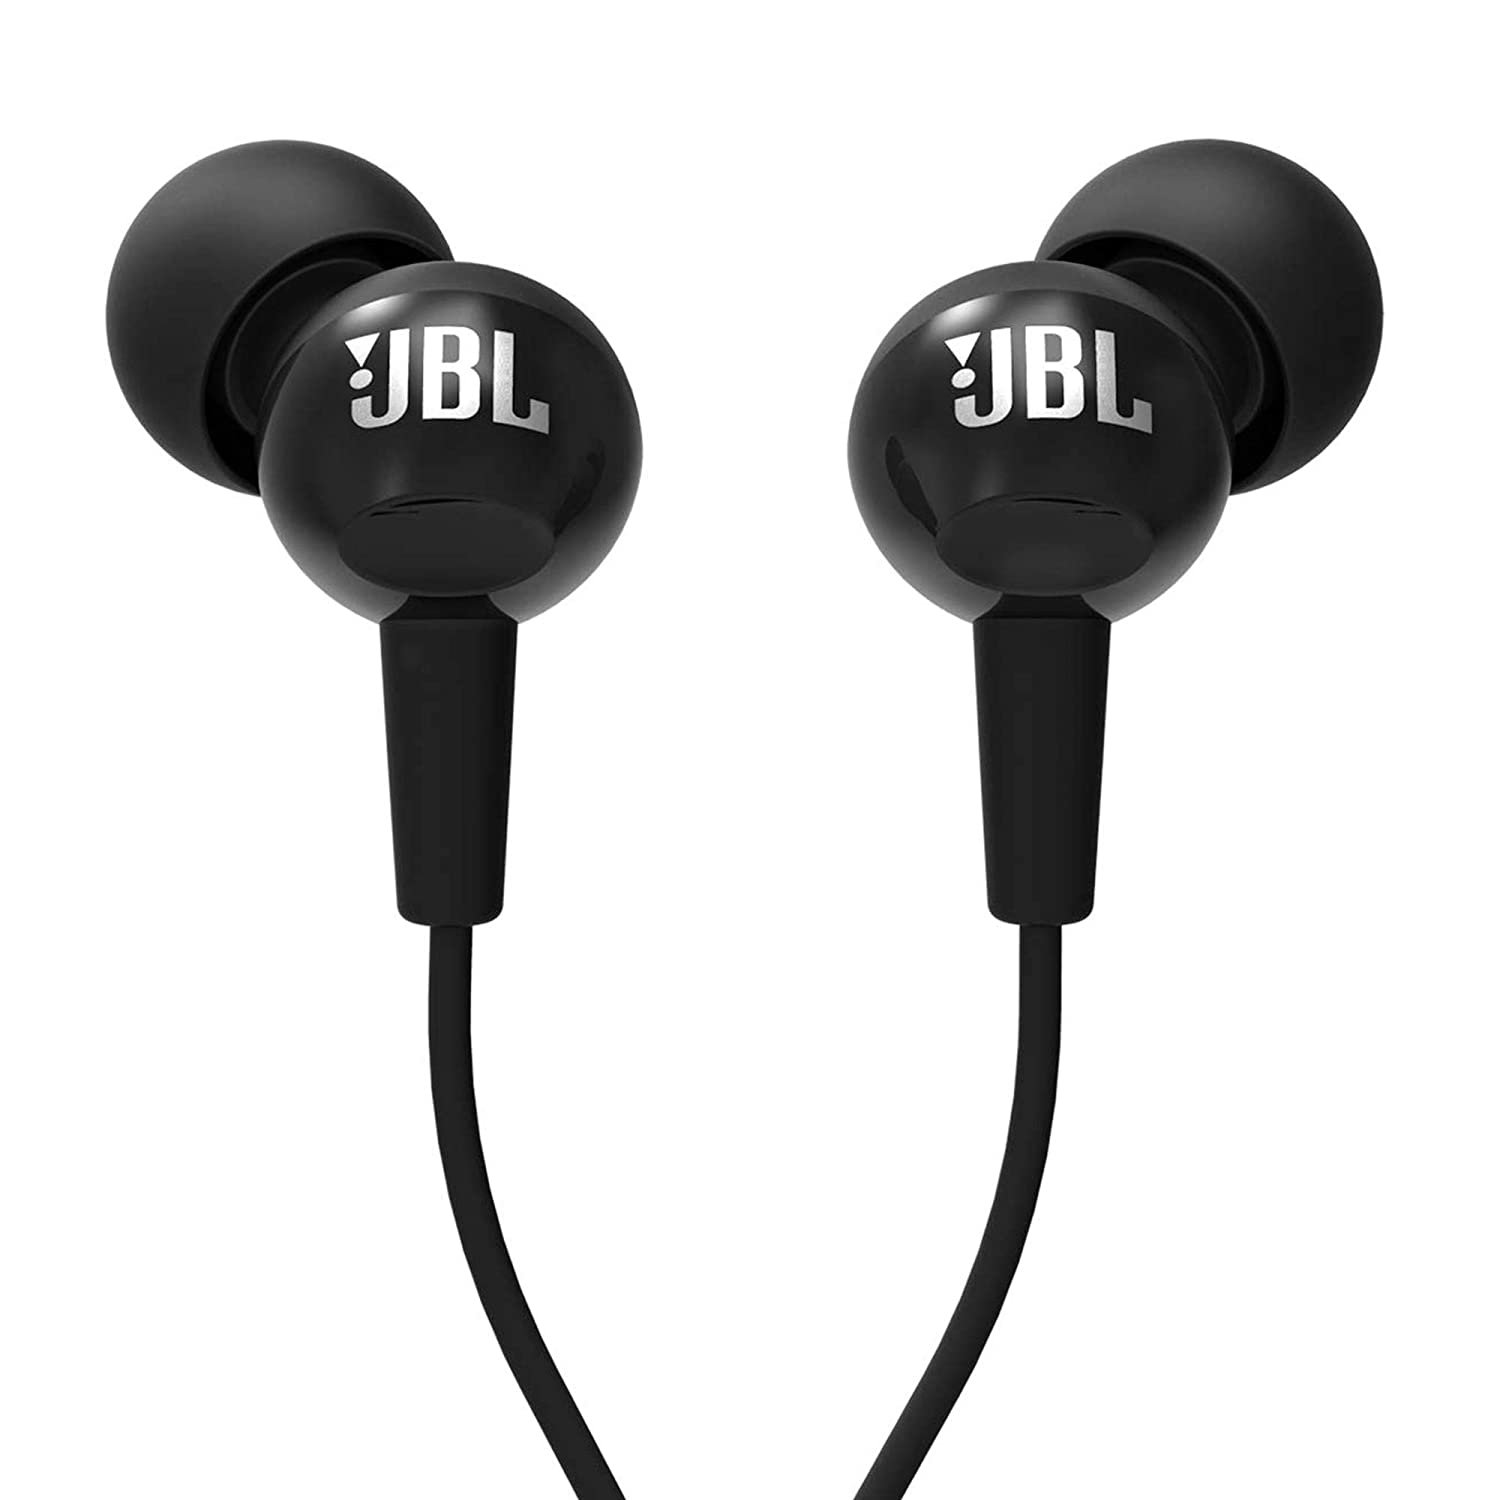 JBL In-Ear Headphones With Mic (Black)